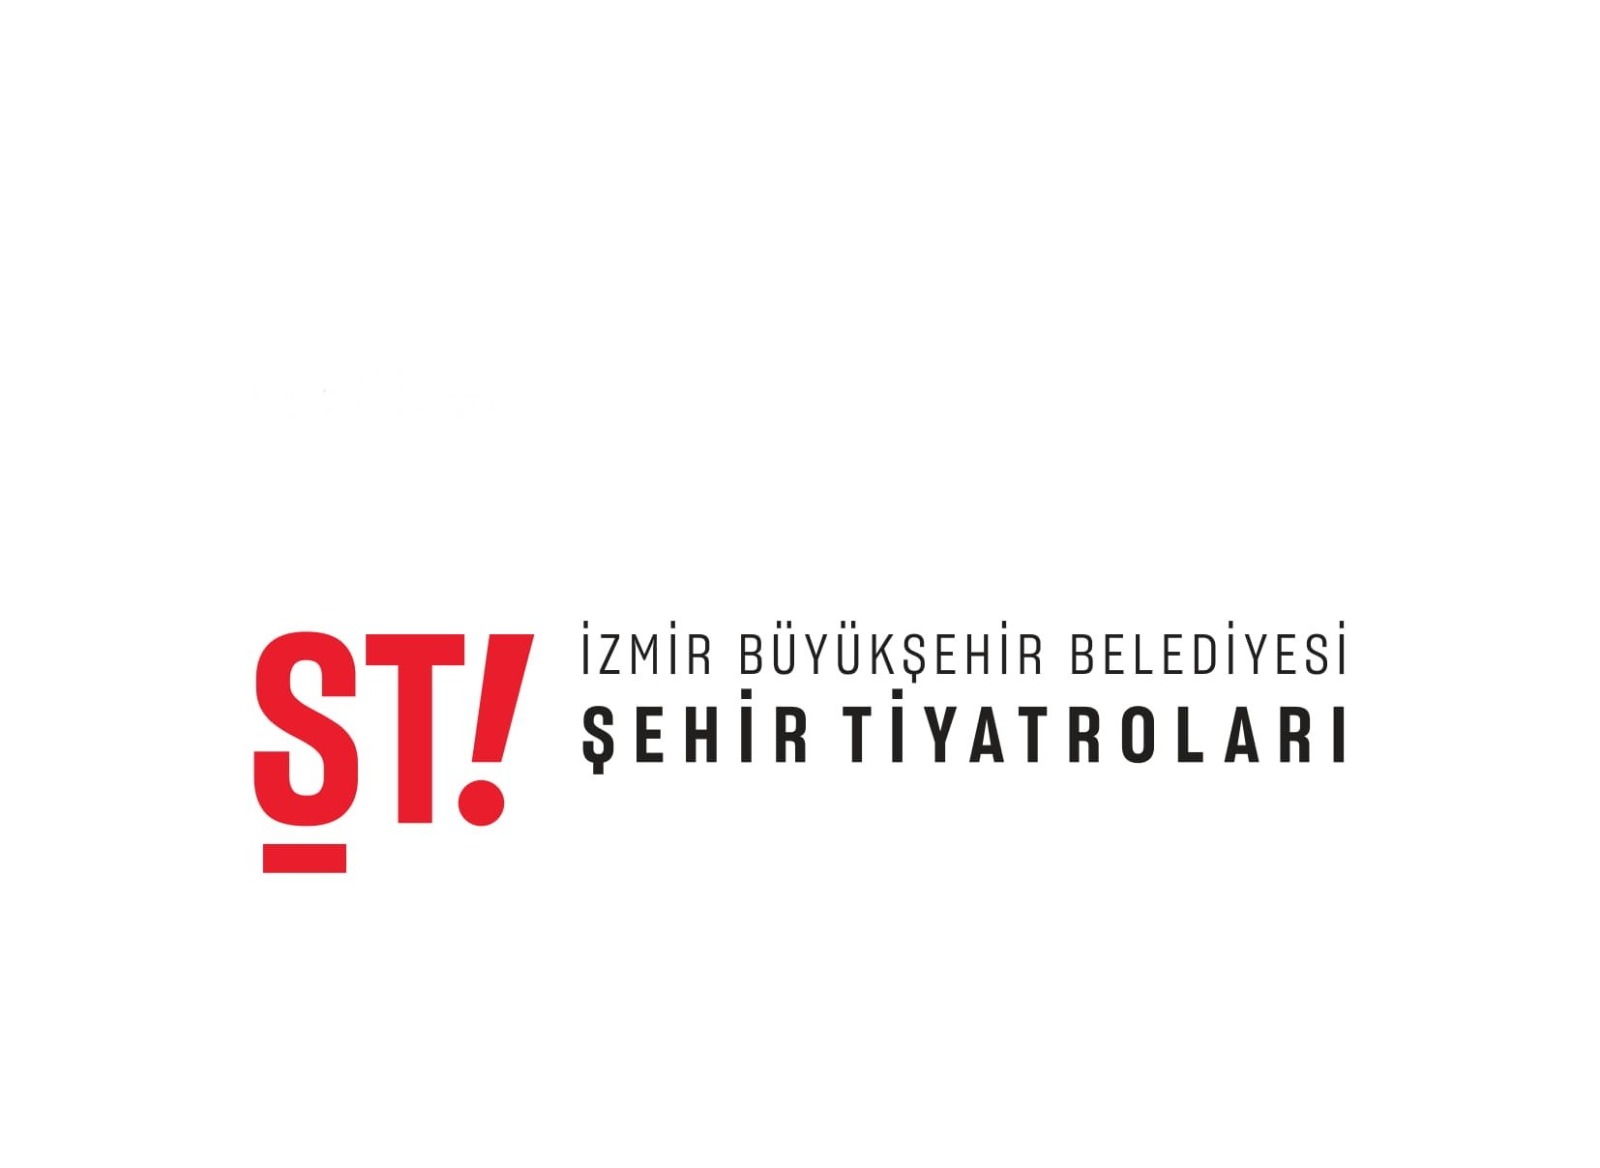 İzmir Büyükşehir Belediyesi Şehir Tiyatroları Yücel Erten’e emanet